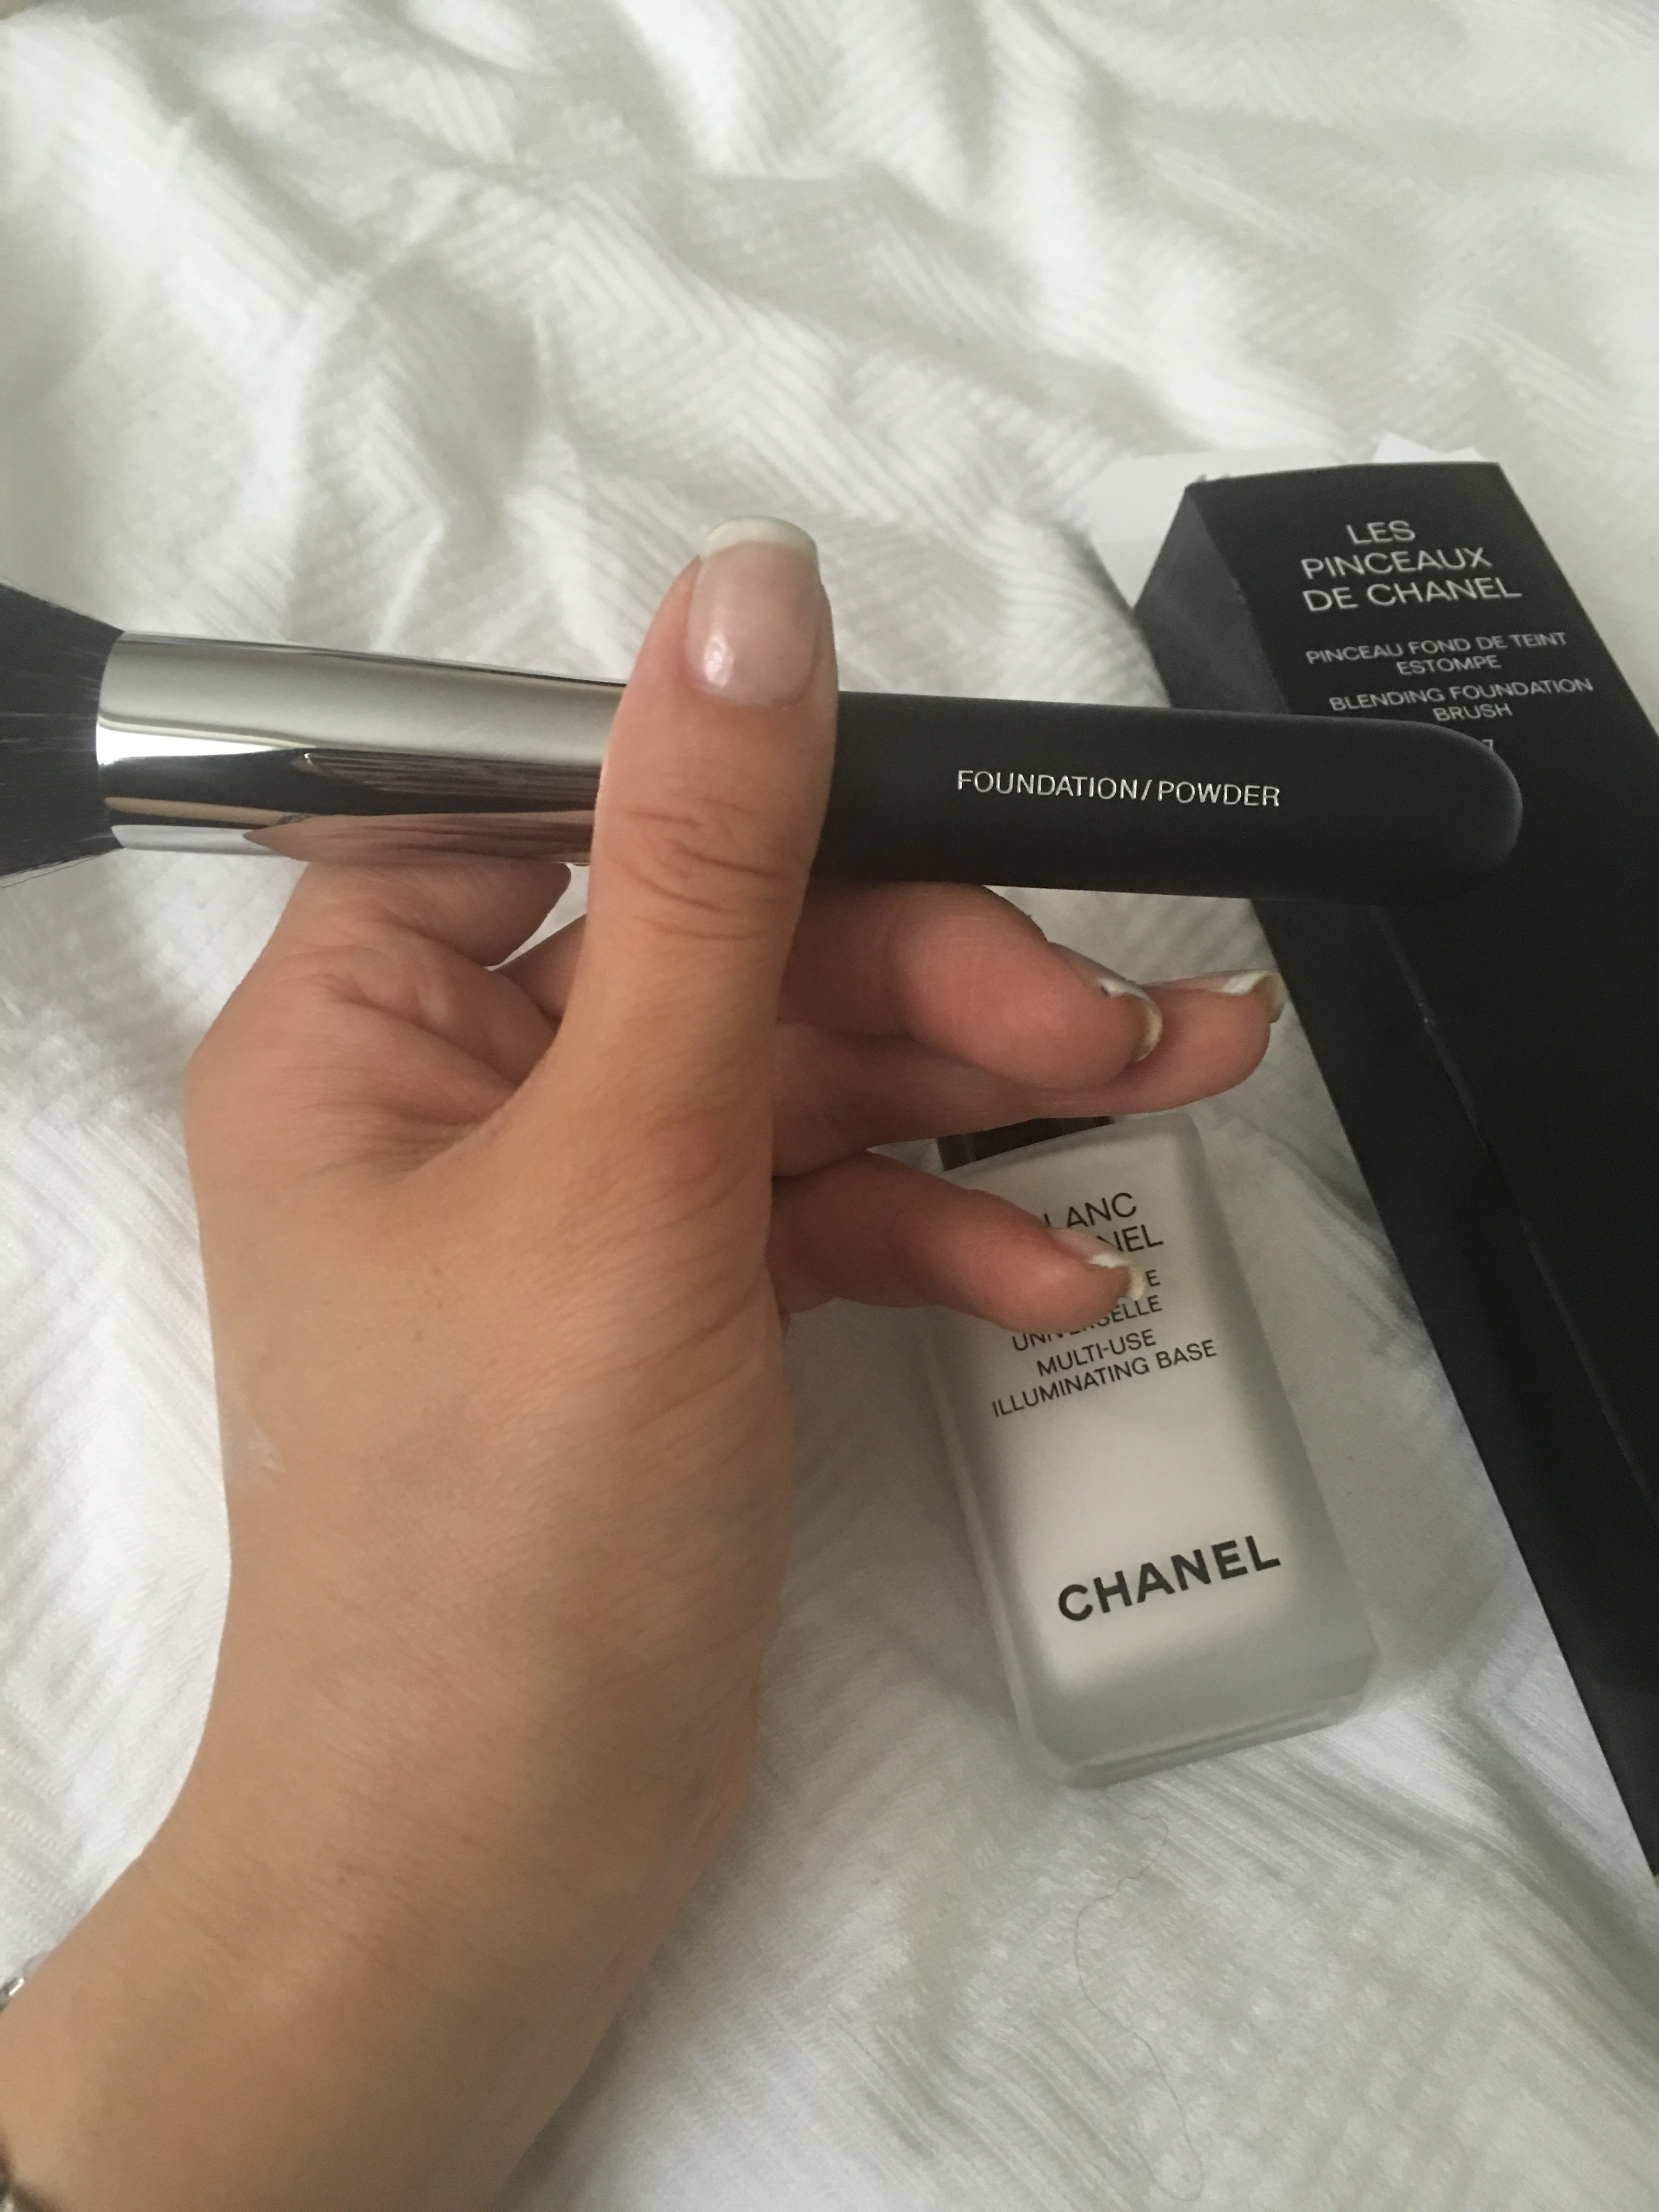 Chanel foundation/powder brush – mish-mish